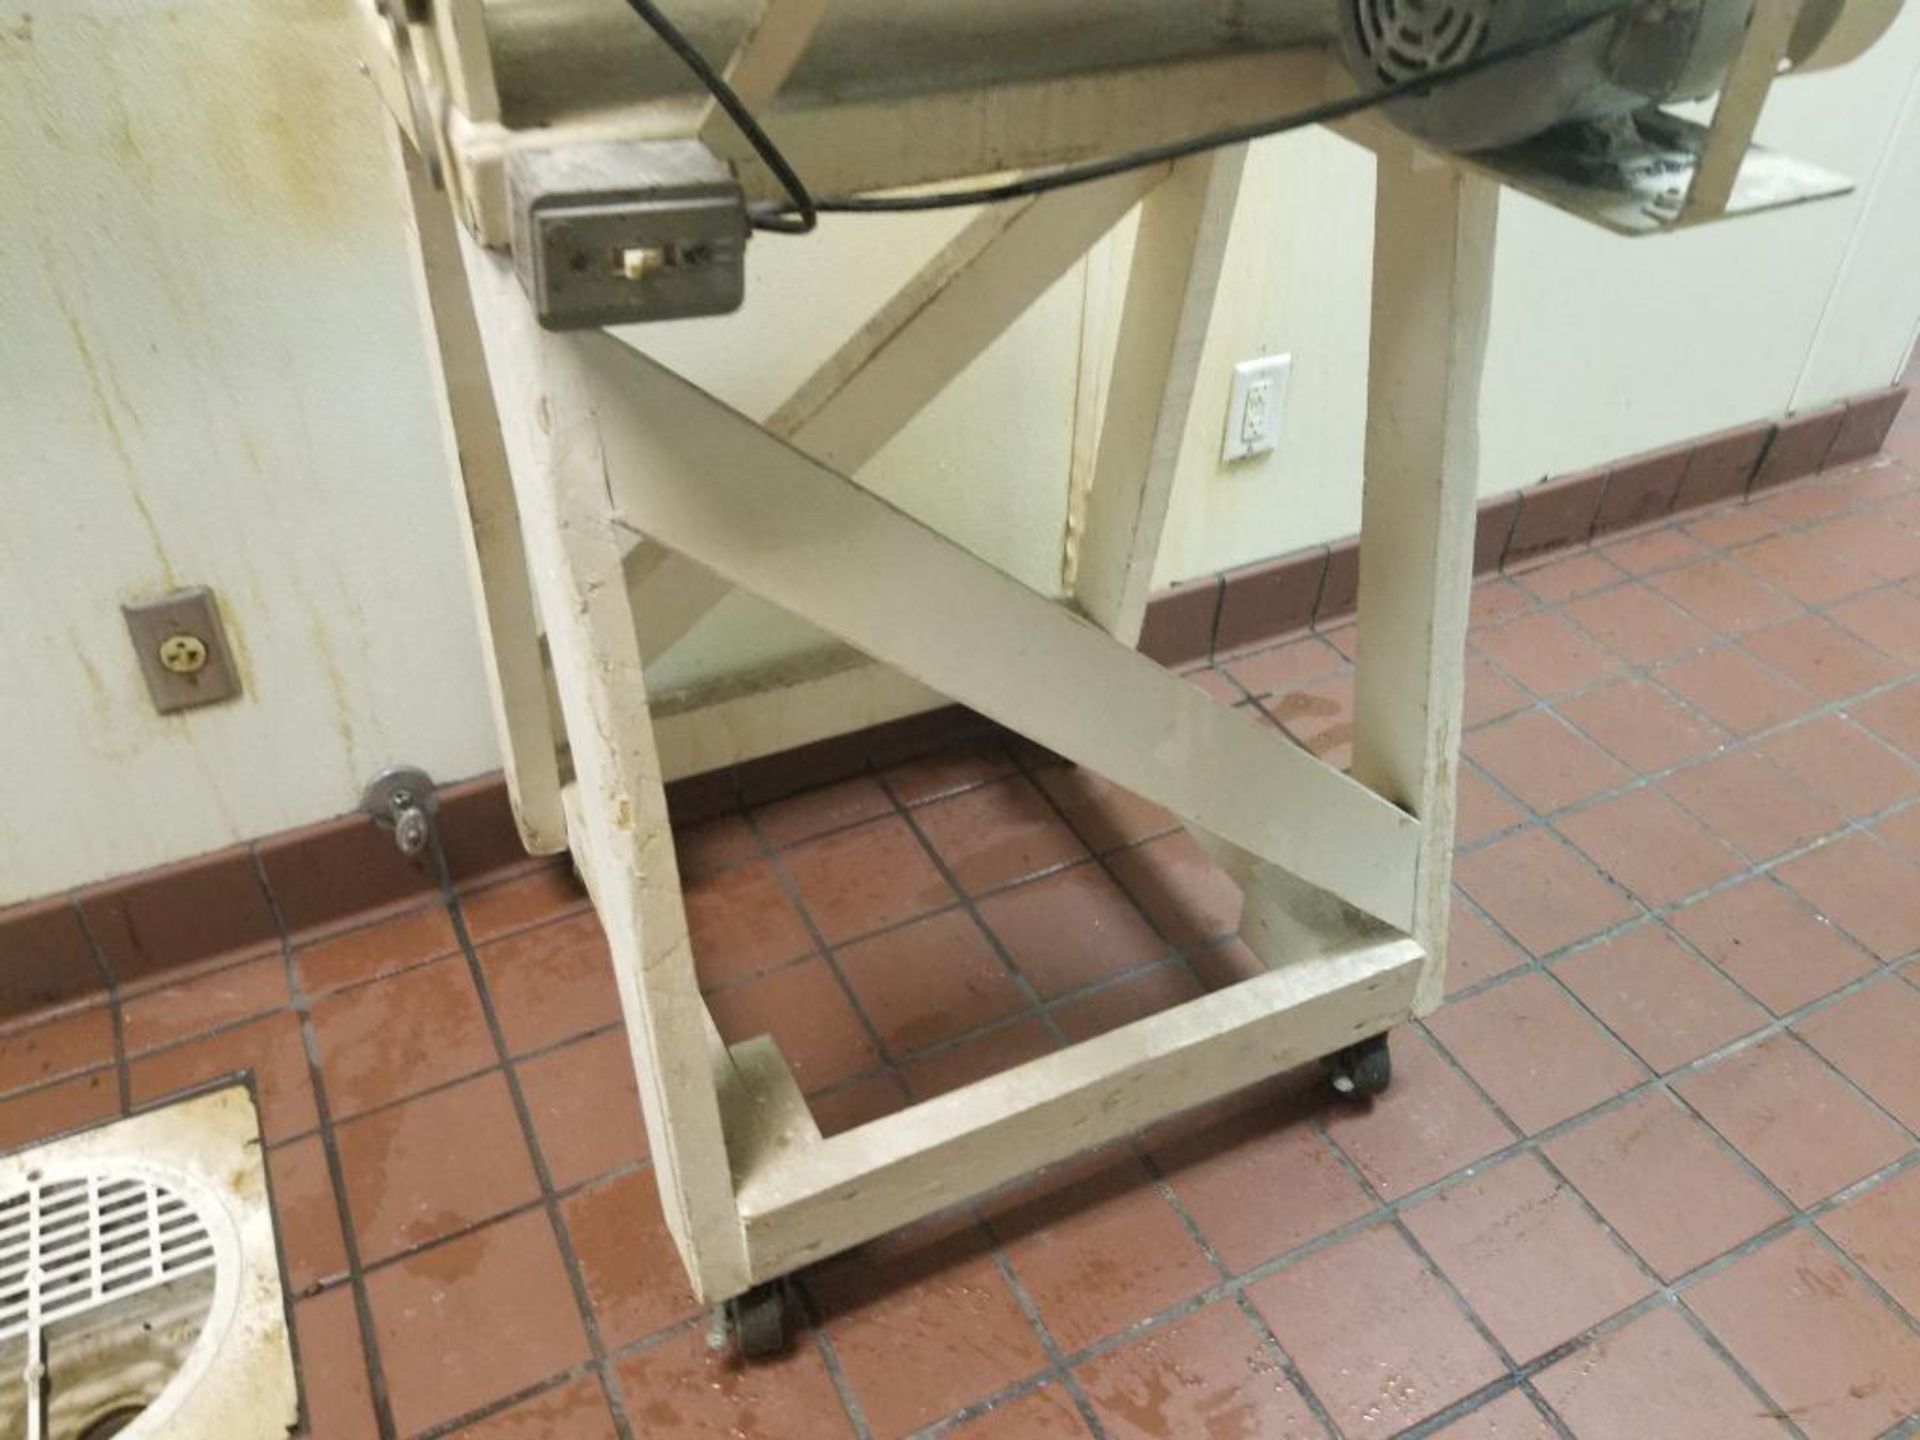 Colborne Mfg 20in dough roller. Model B10. 115v single phase. - Image 10 of 11